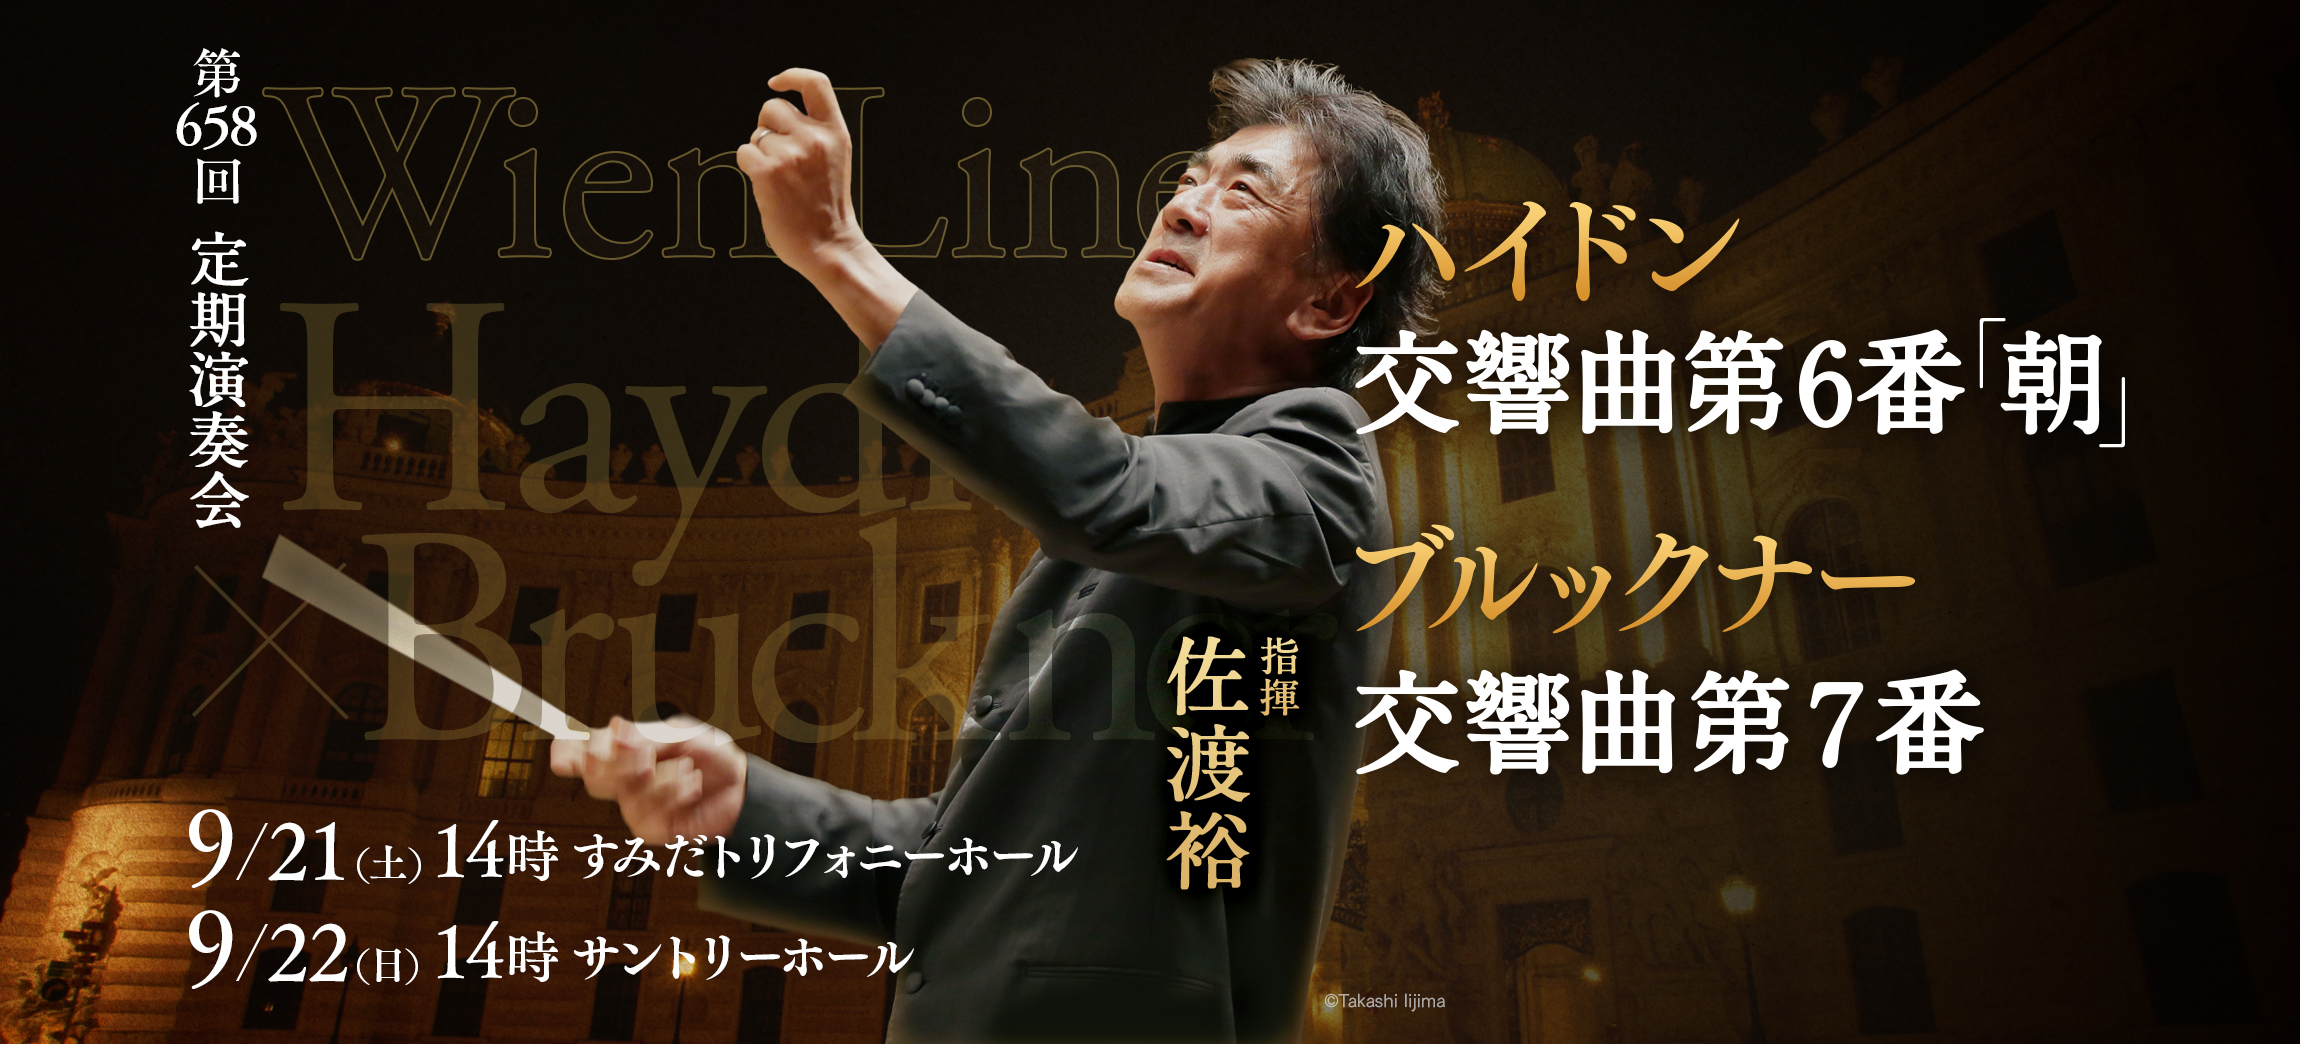 新日本フィルハーモニー交響楽団#658〈トリフォニーホール・シリーズ〉のフライヤー画像